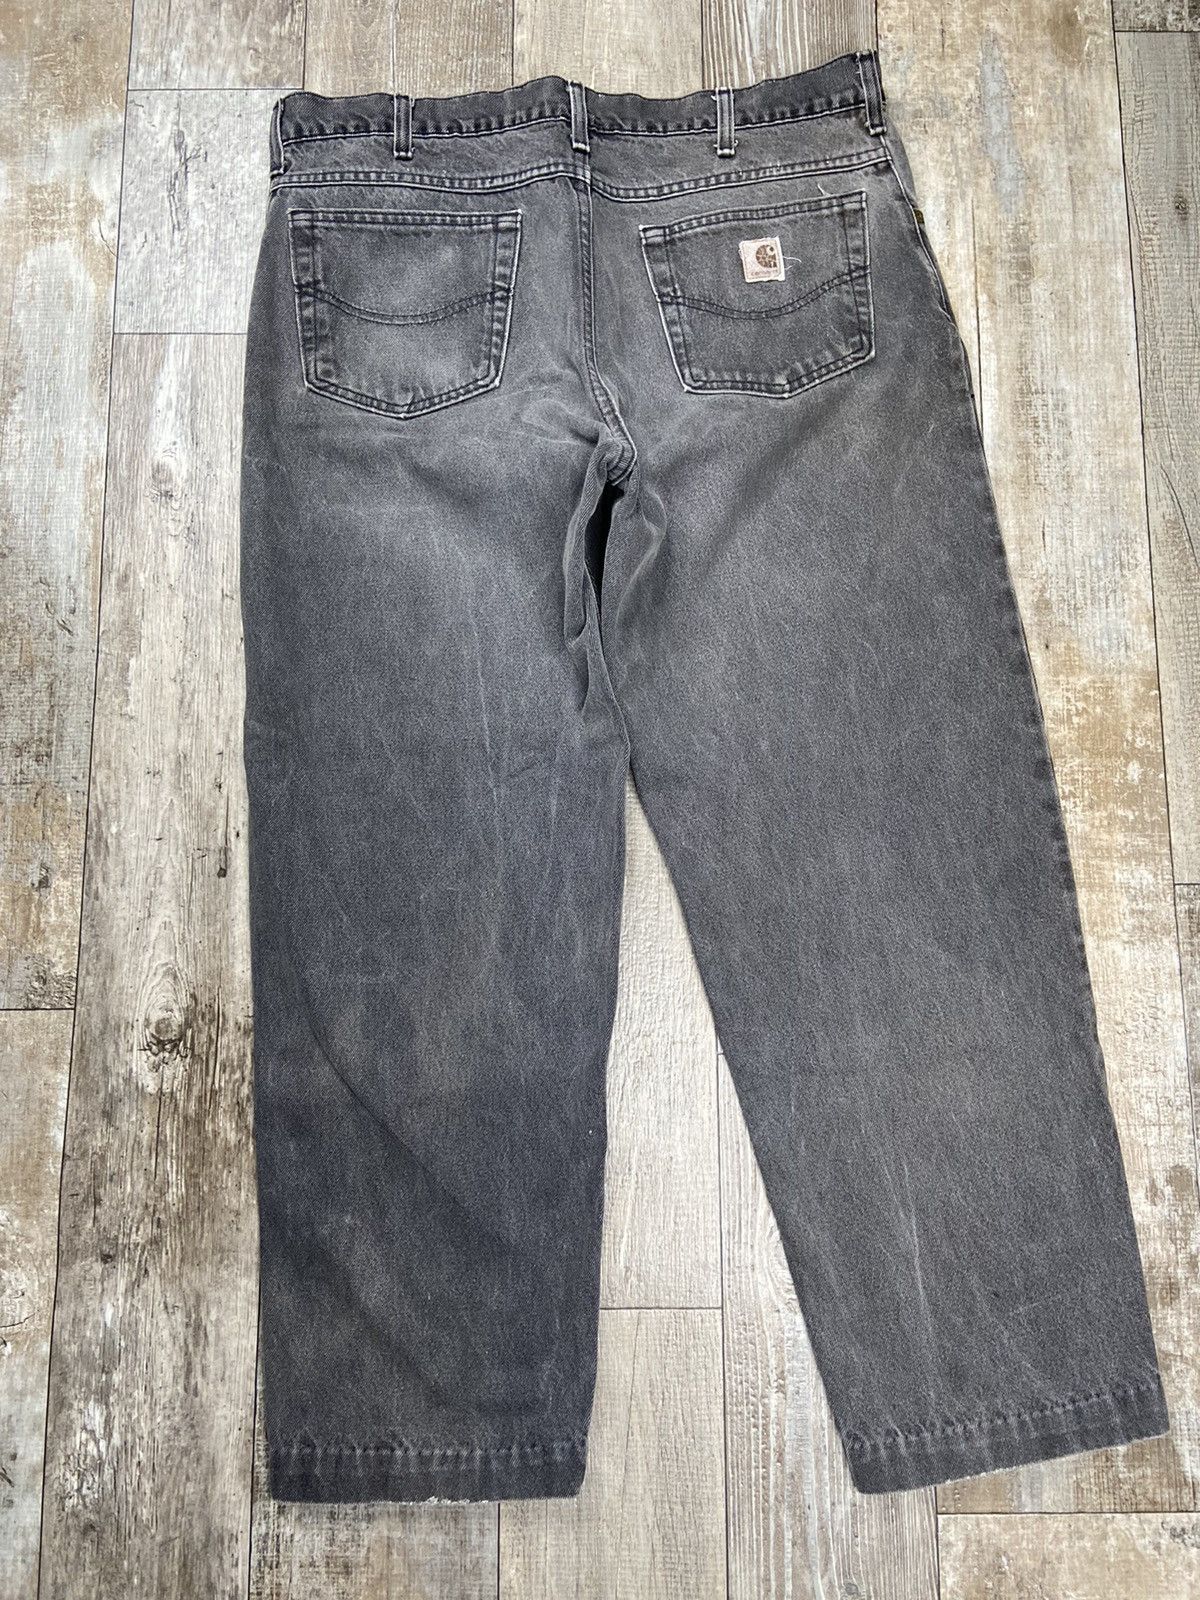 Vintage Vintage Carhartt Black Jeans 38x30 USA Size US 38 / EU 54 - 6 Thumbnail